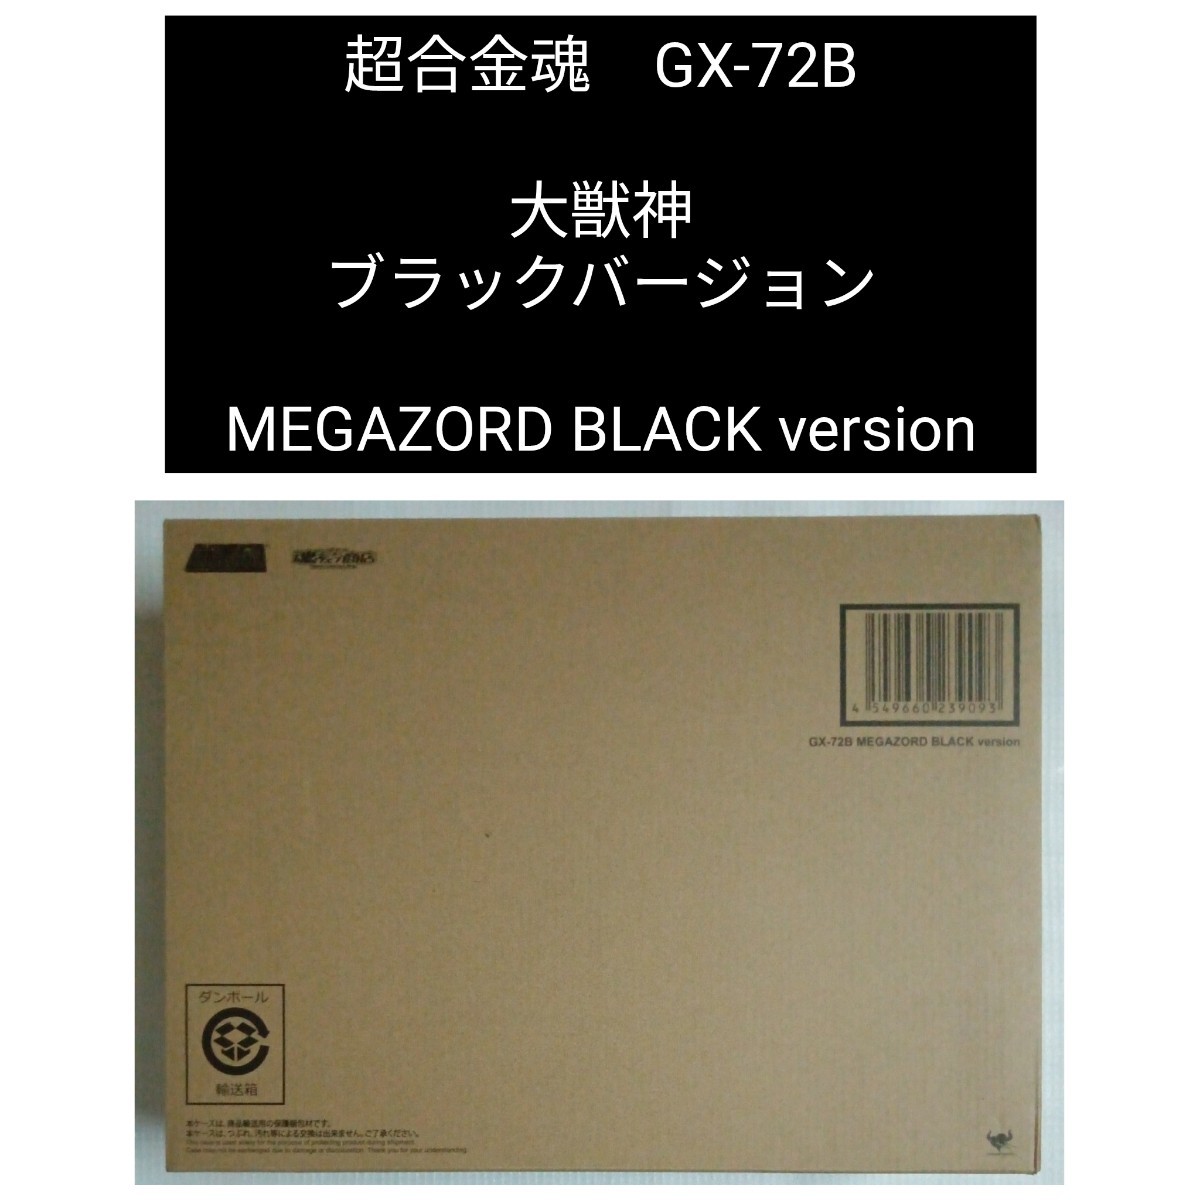 【輸送箱未開封】超合金魂GX-72B大獣神ブラックバージョン MEGAZORD BLACK version 恐竜戦隊ジュウレンジャーMighty Morphin Power Rangers